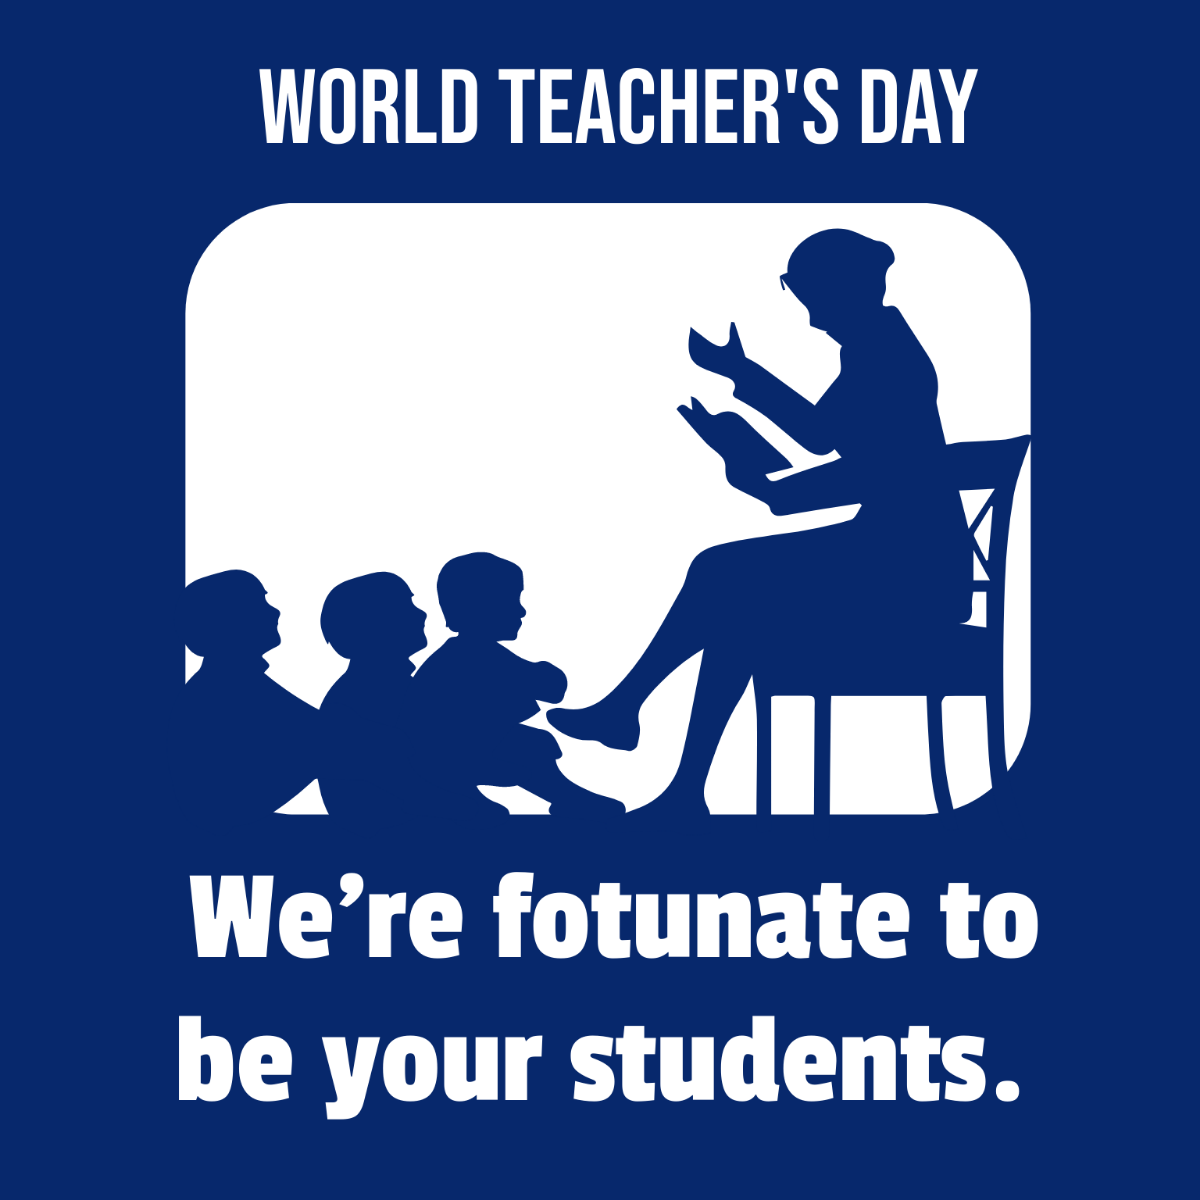 World Teachers’ Day Flyer Vector Template